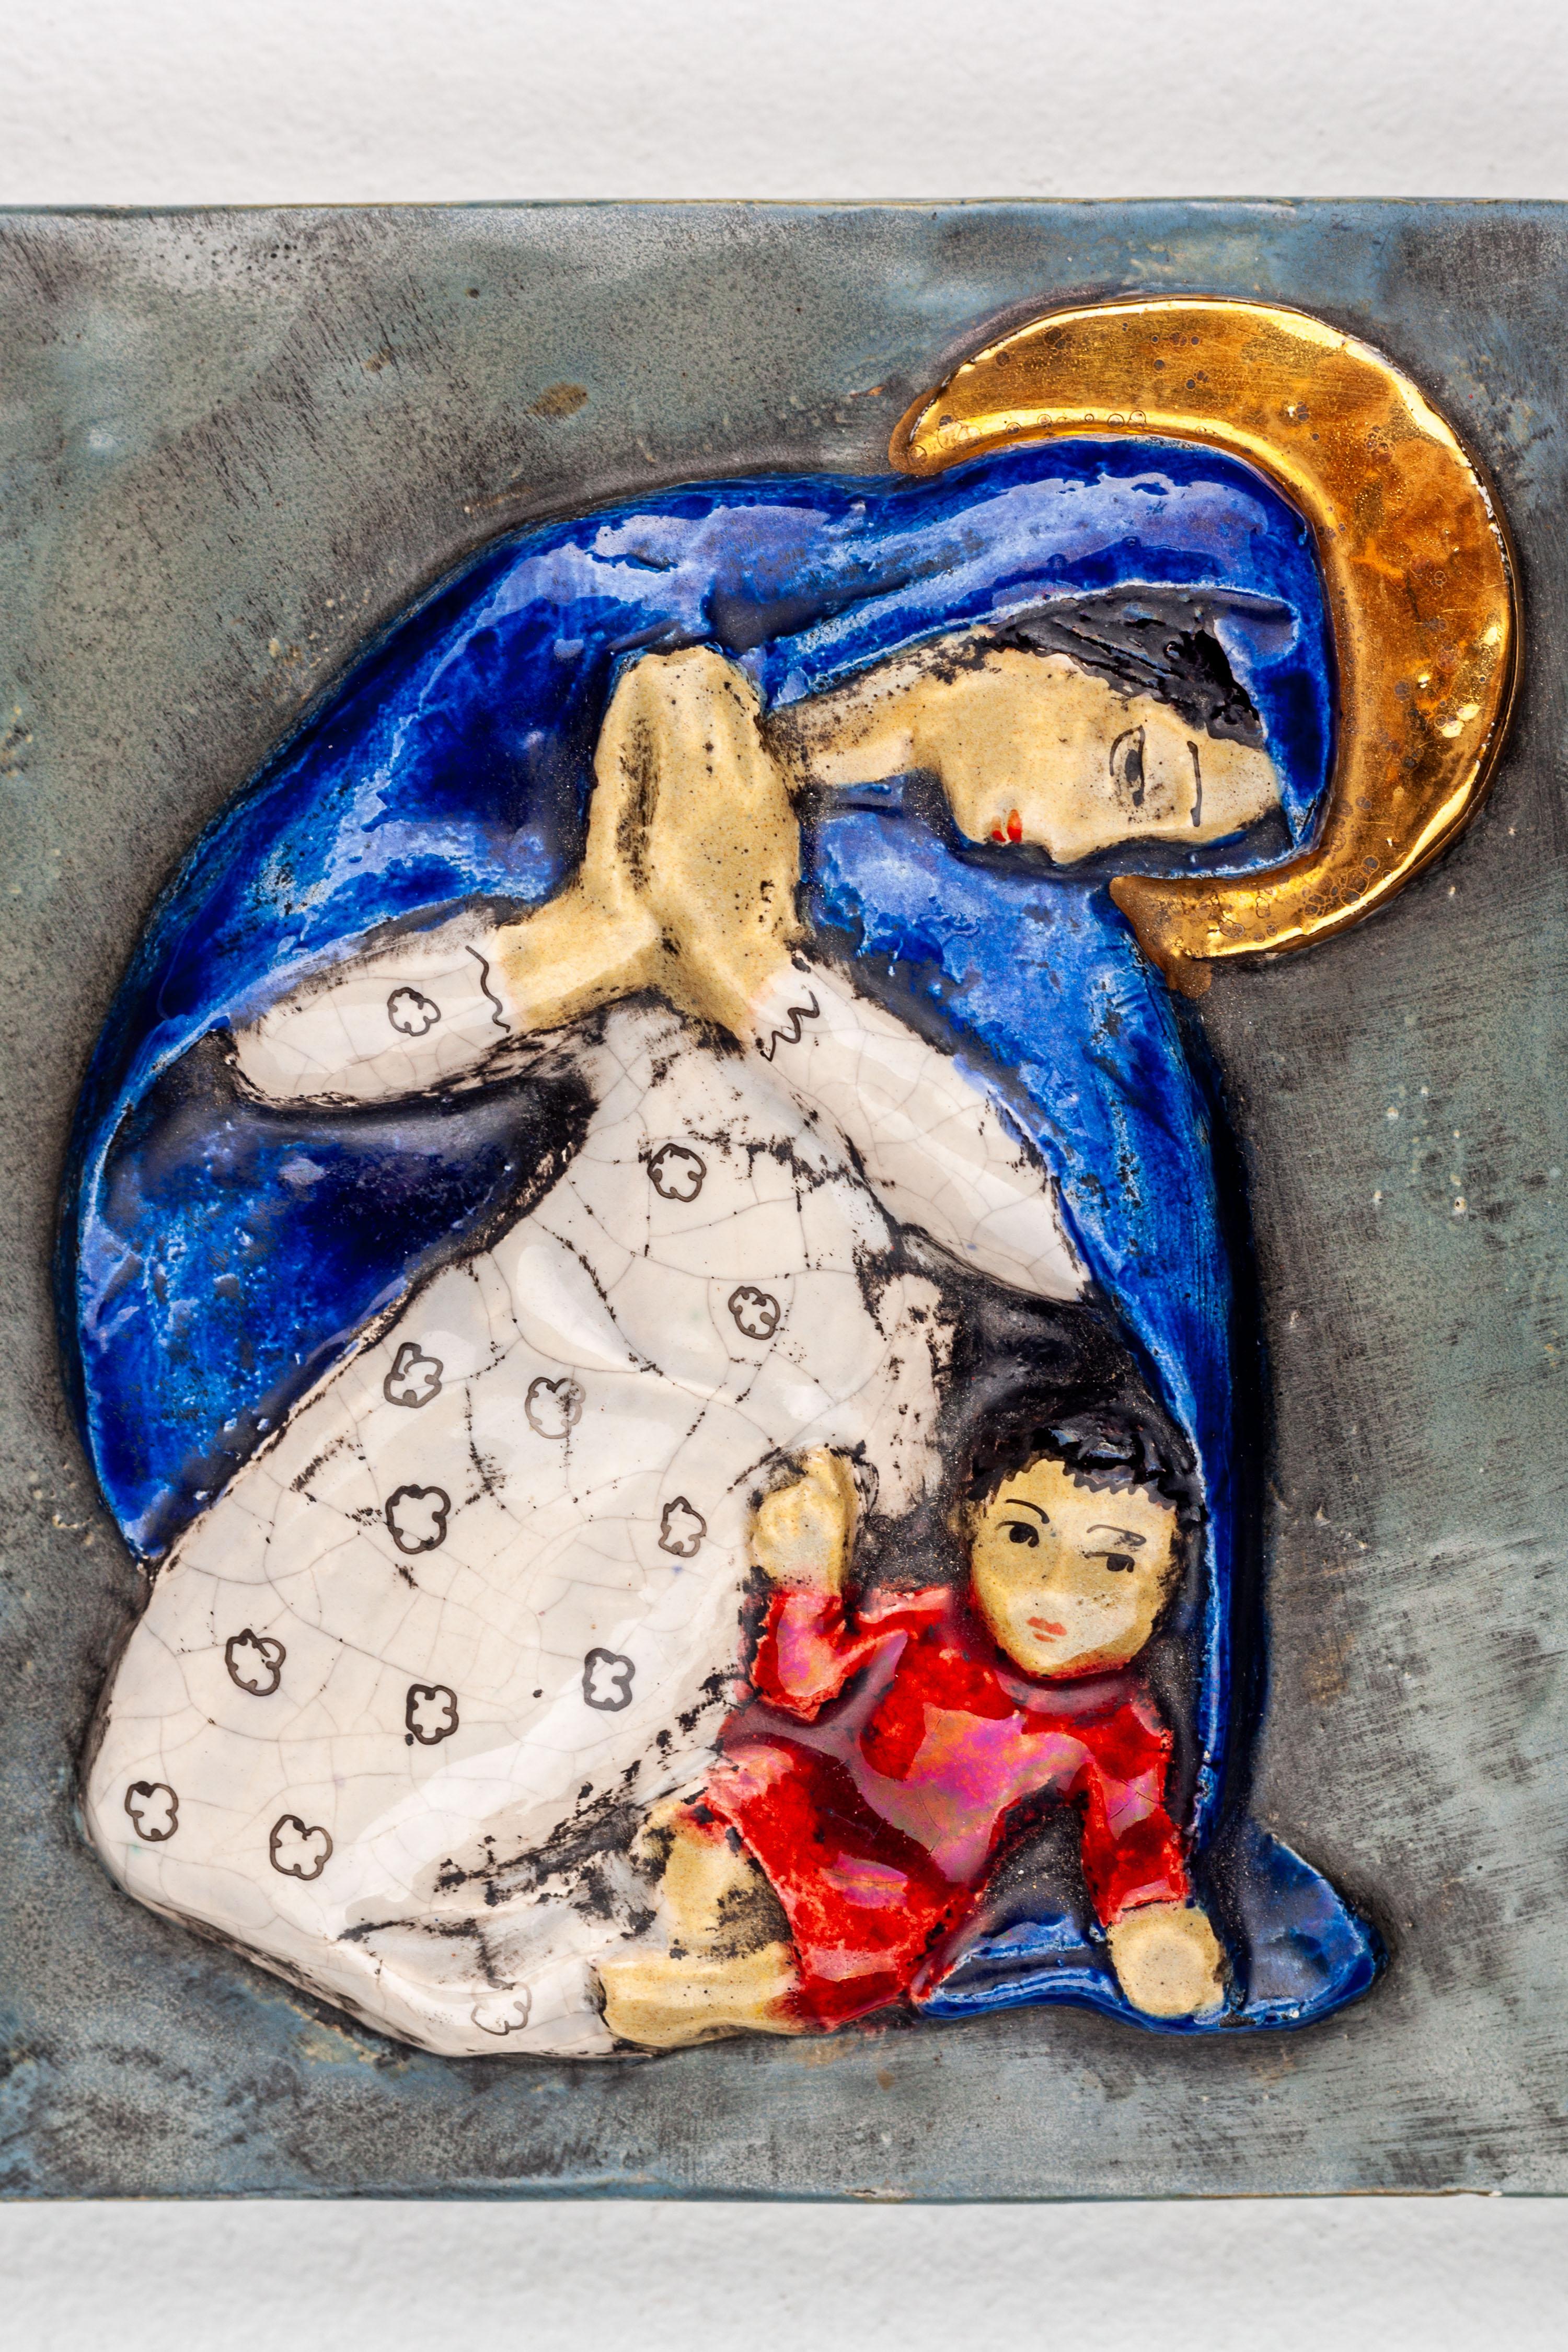 Virgen María y el Niño Jesús Decoración de cerámica de pared hecha a mano por el artista modernista Studio Pottery. Virgen María con manos orantes, con vestido blanco y capa azul noche que le cubre la cabeza y los hombros, aureola dorada. Con el